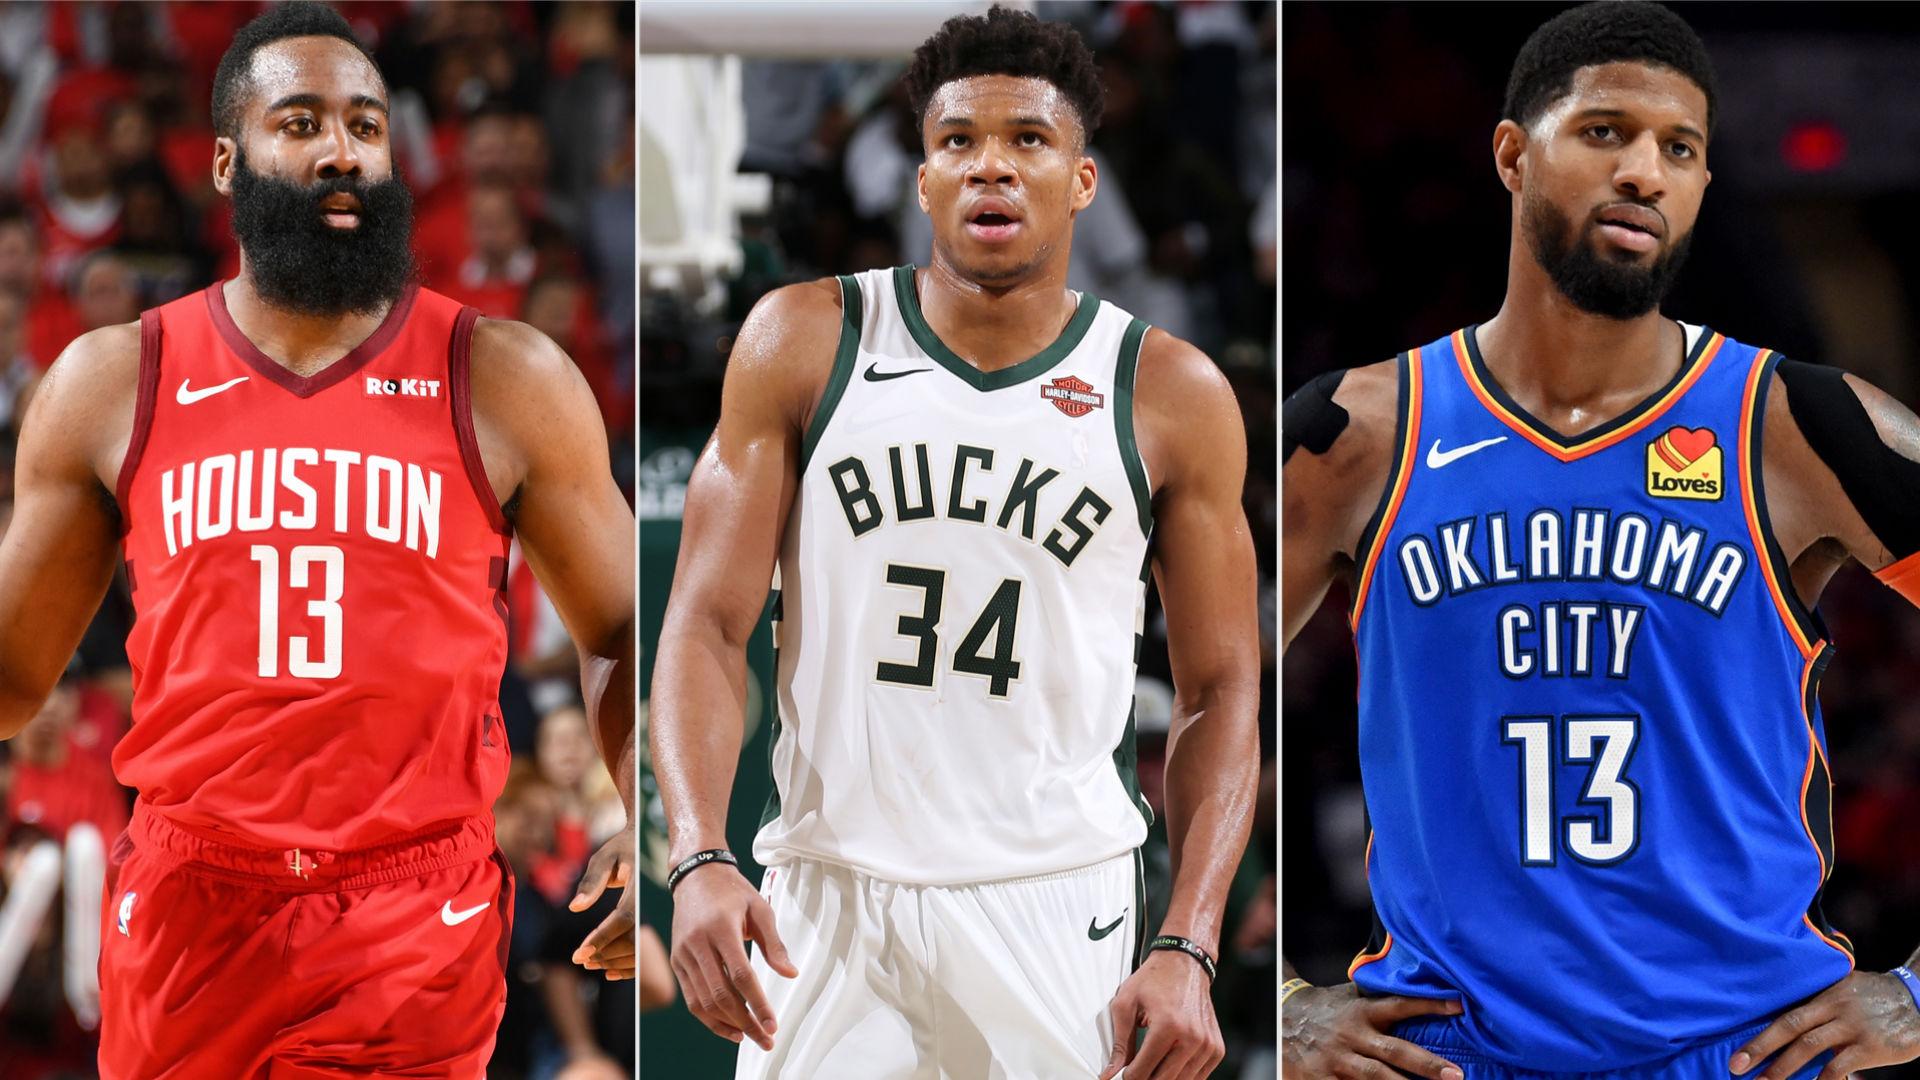 NBA Announces Official Award Finalists For The 2018 19 Season. NBA